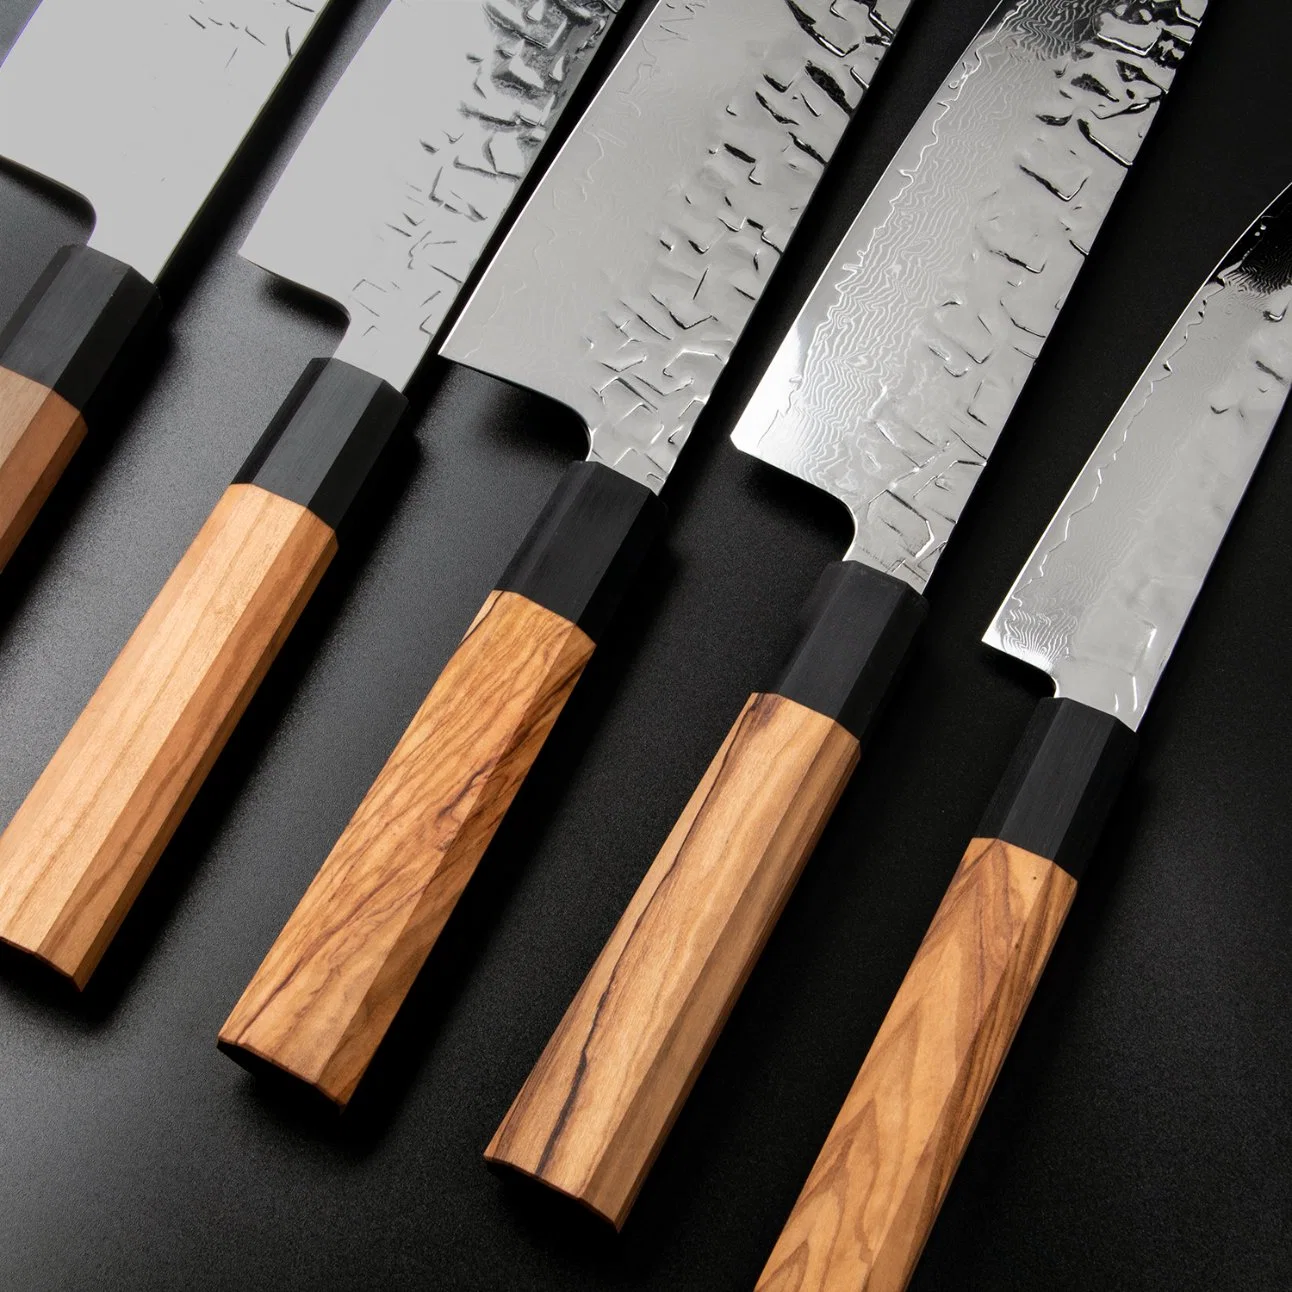 سكين دمشق/سكين جانباني/مجموعة أدوات المطبخ مع مقبض Olivewood (SE-Z013)